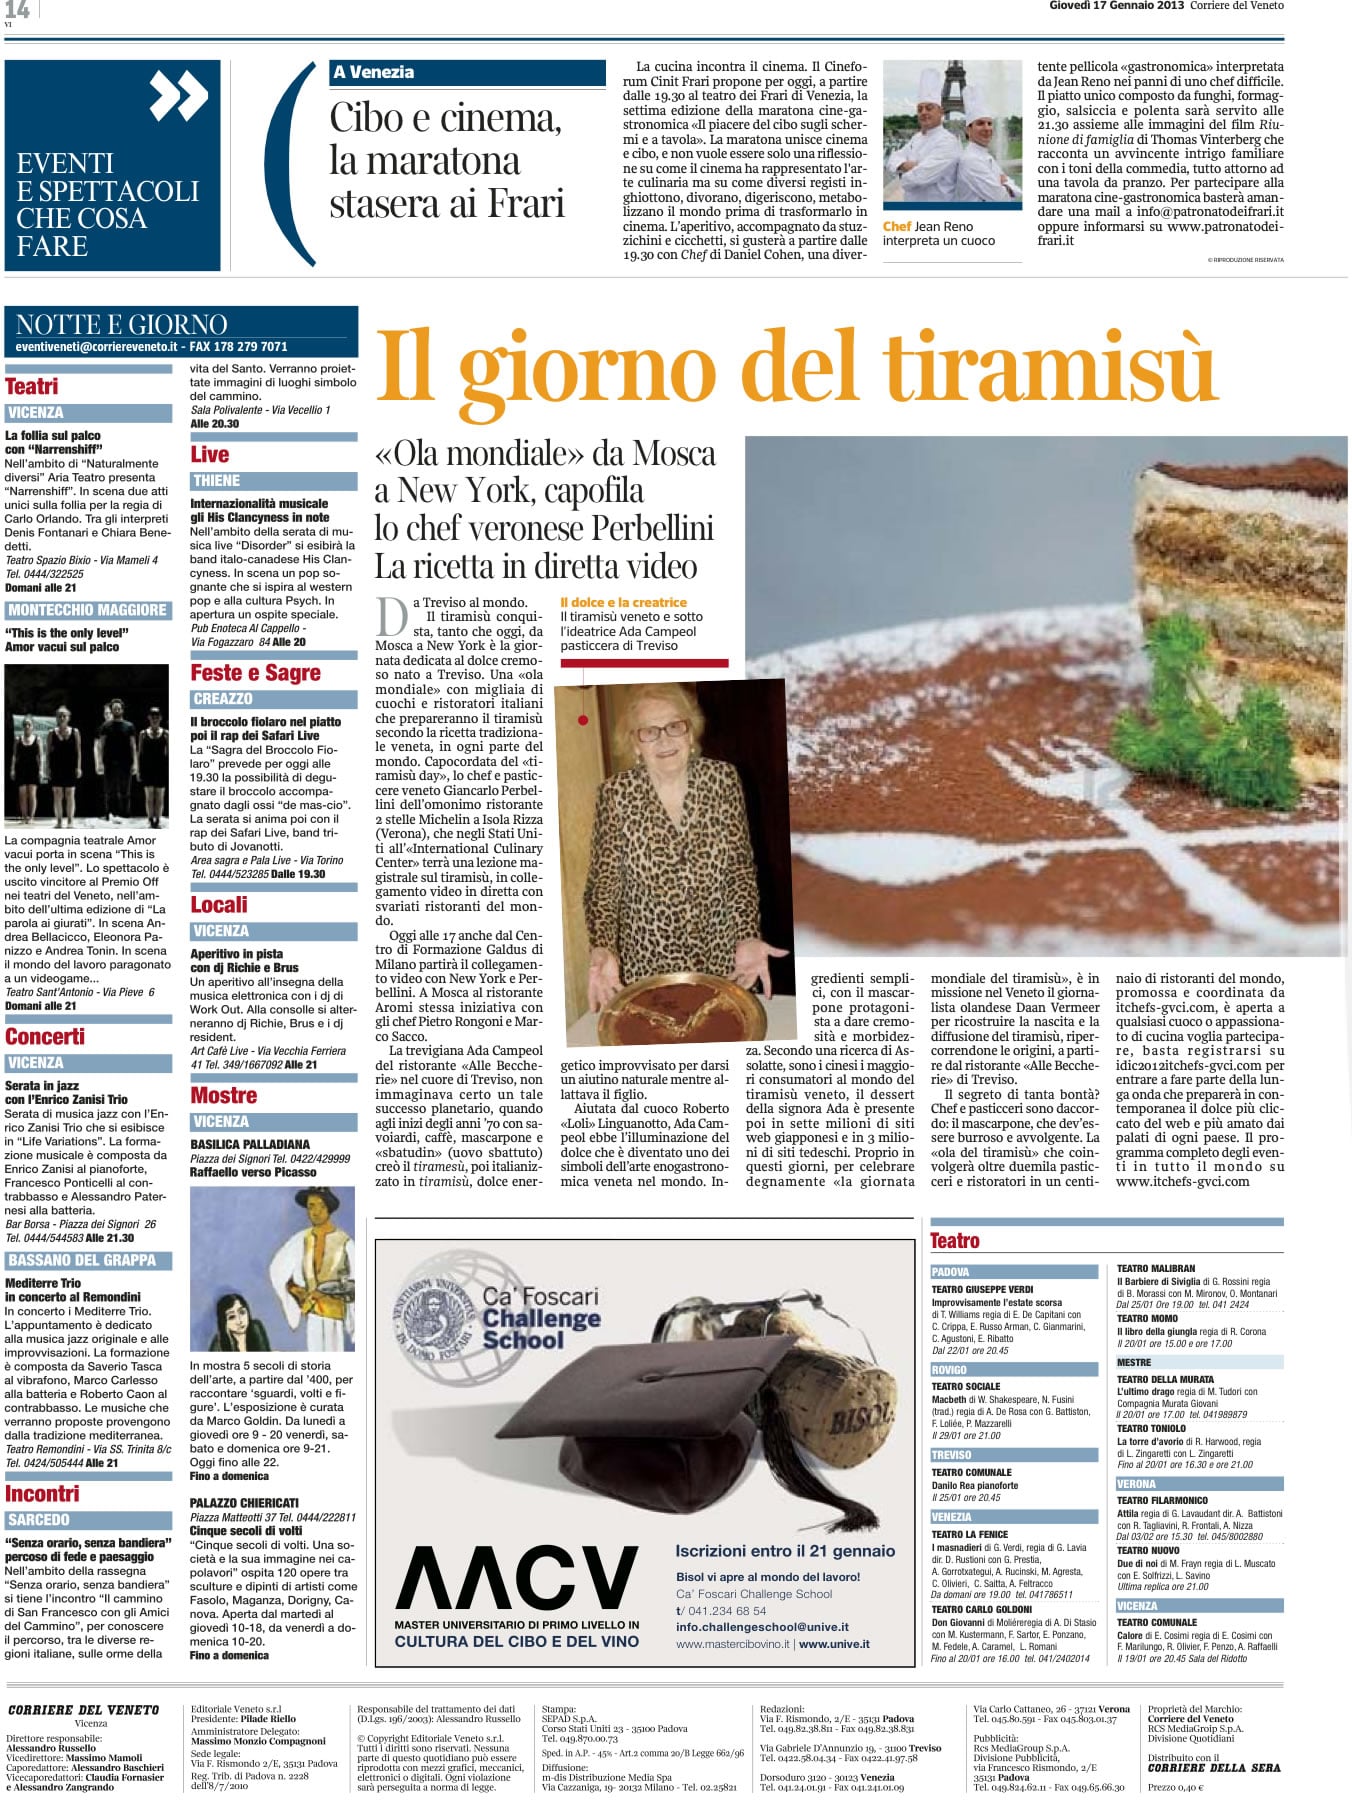 Prima giornata mondiale del Tiramisù 17 gennaio 2013 Corriere della sera